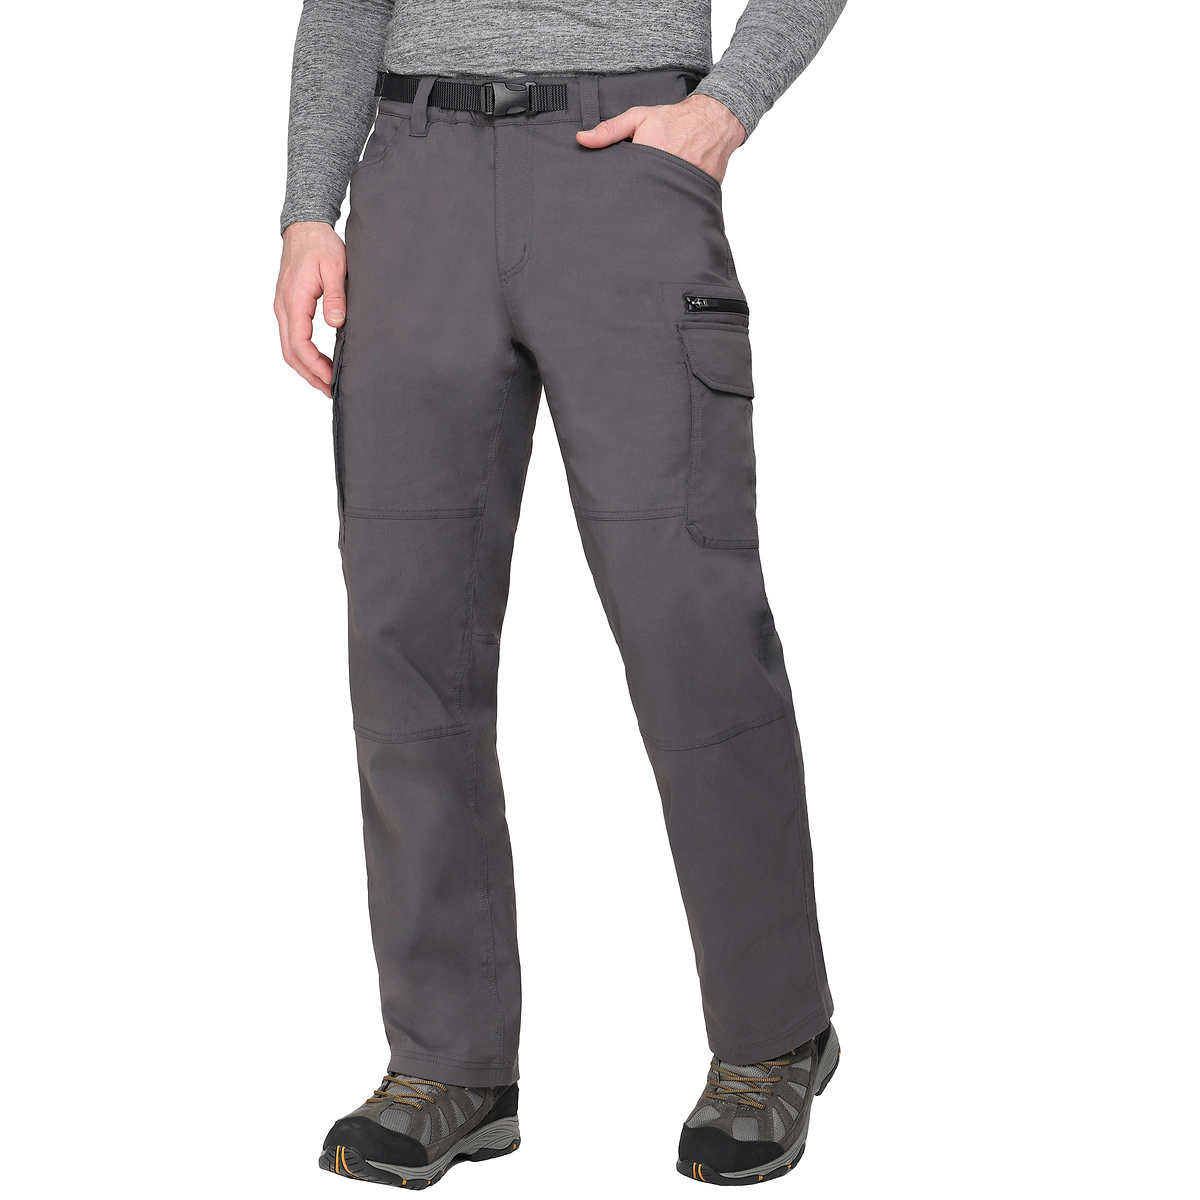 the-bc-clothing-pantalon-doublé-homme-men-lined-pants-4